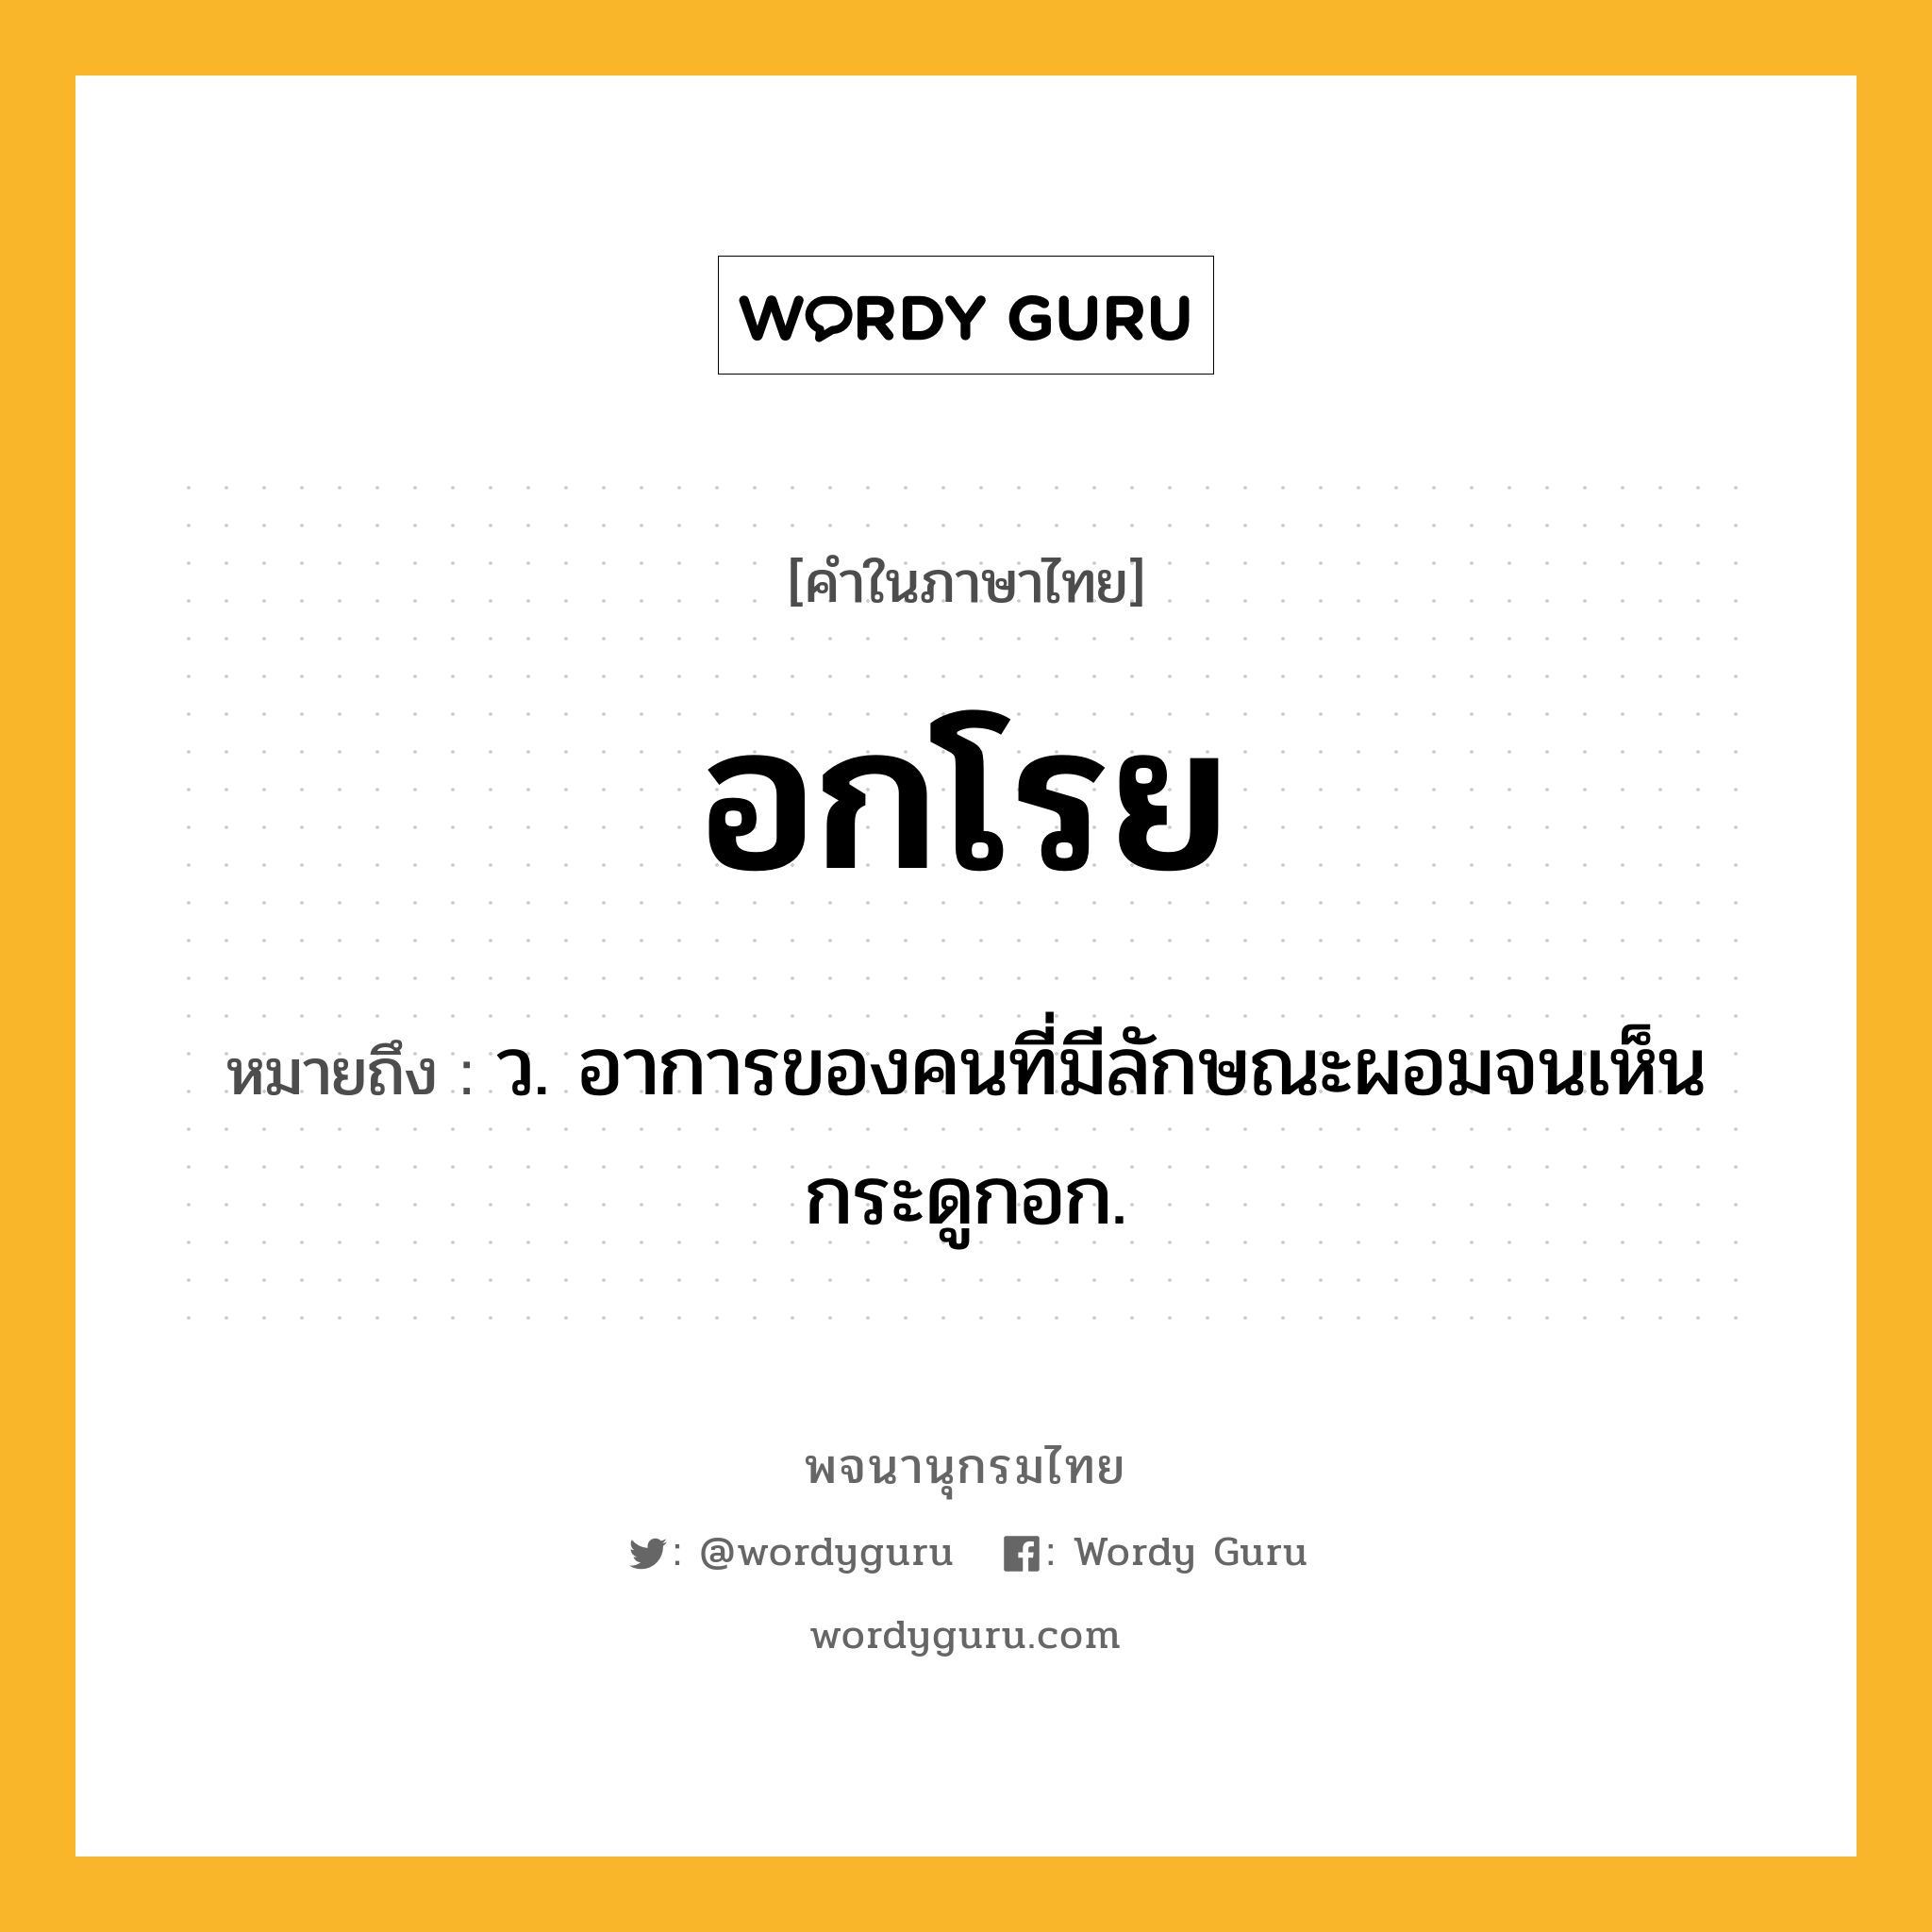 อกโรย ความหมาย หมายถึงอะไร?, คำในภาษาไทย อกโรย หมายถึง ว. อาการของคนที่มีลักษณะผอมจนเห็นกระดูกอก.